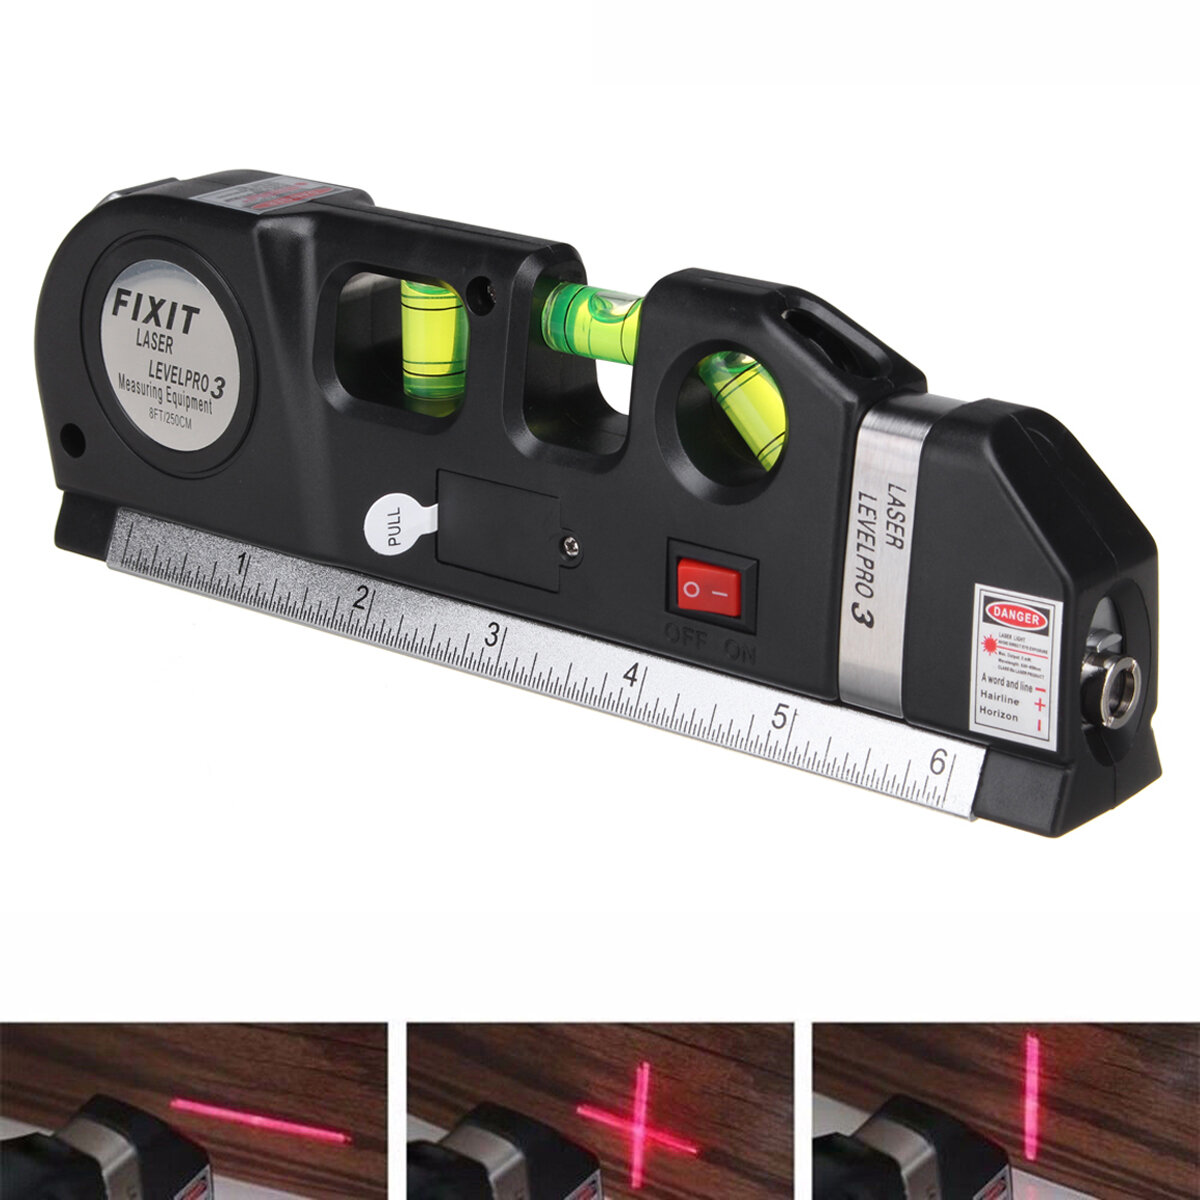 Laser Level Spirit Level Line Lasers Ruler Horizontal Ruler Measure Line Tools Adjusted Standard